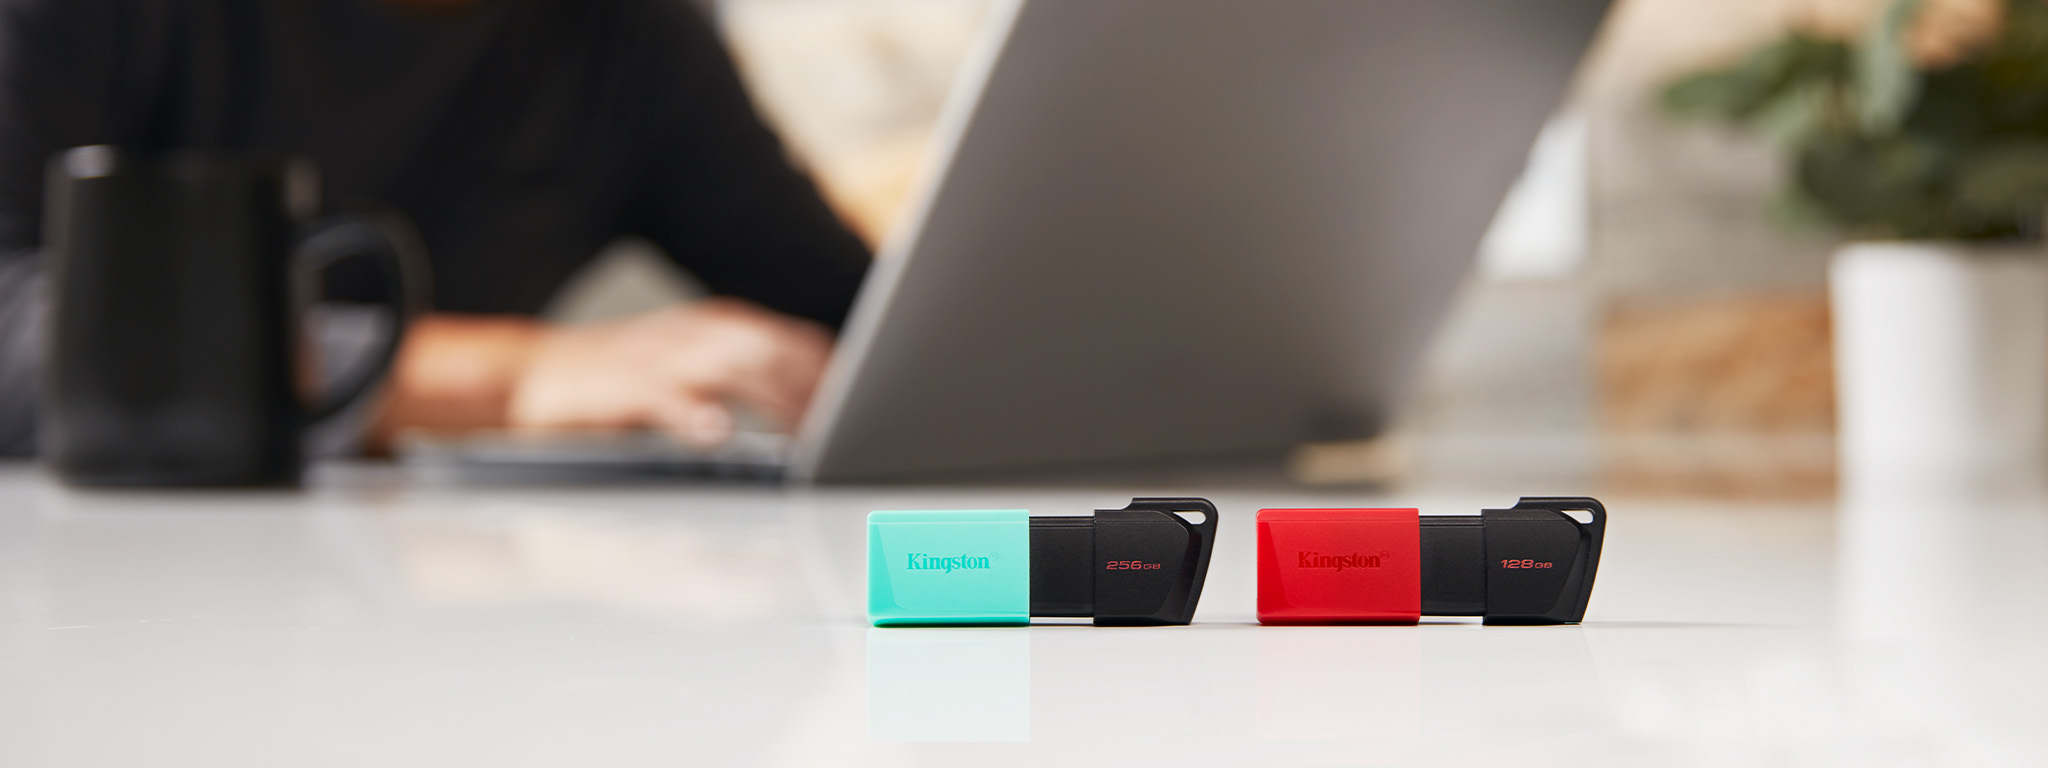 Dwie pamięci flash USB DT Exodia M, jedna z zieloną nasadką, druga z czerwoną, leżące na krawędzi biurka, w tle osoba korzystająca z laptopa